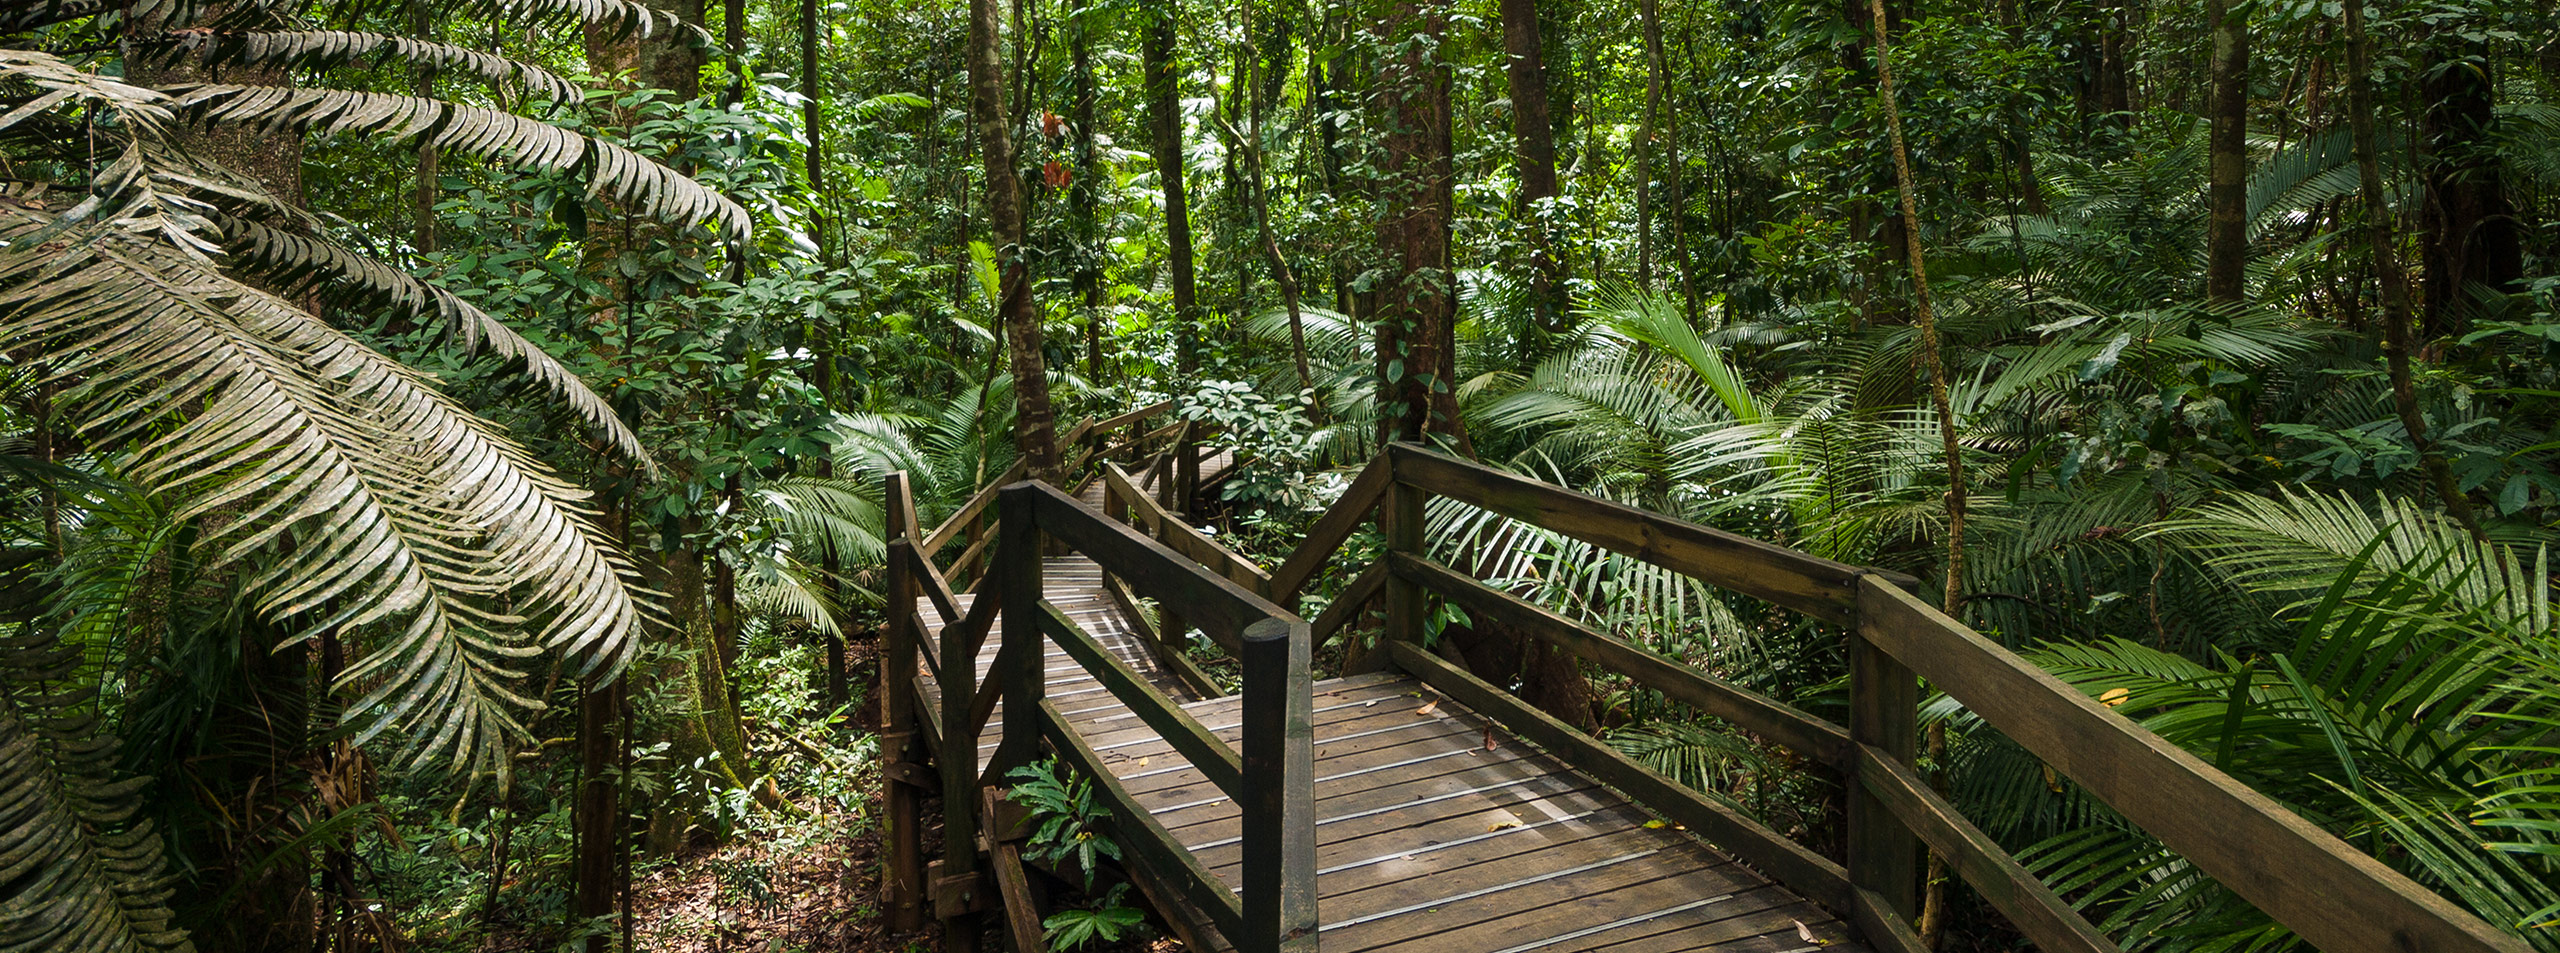 Daintree Rainforest Boardwalk